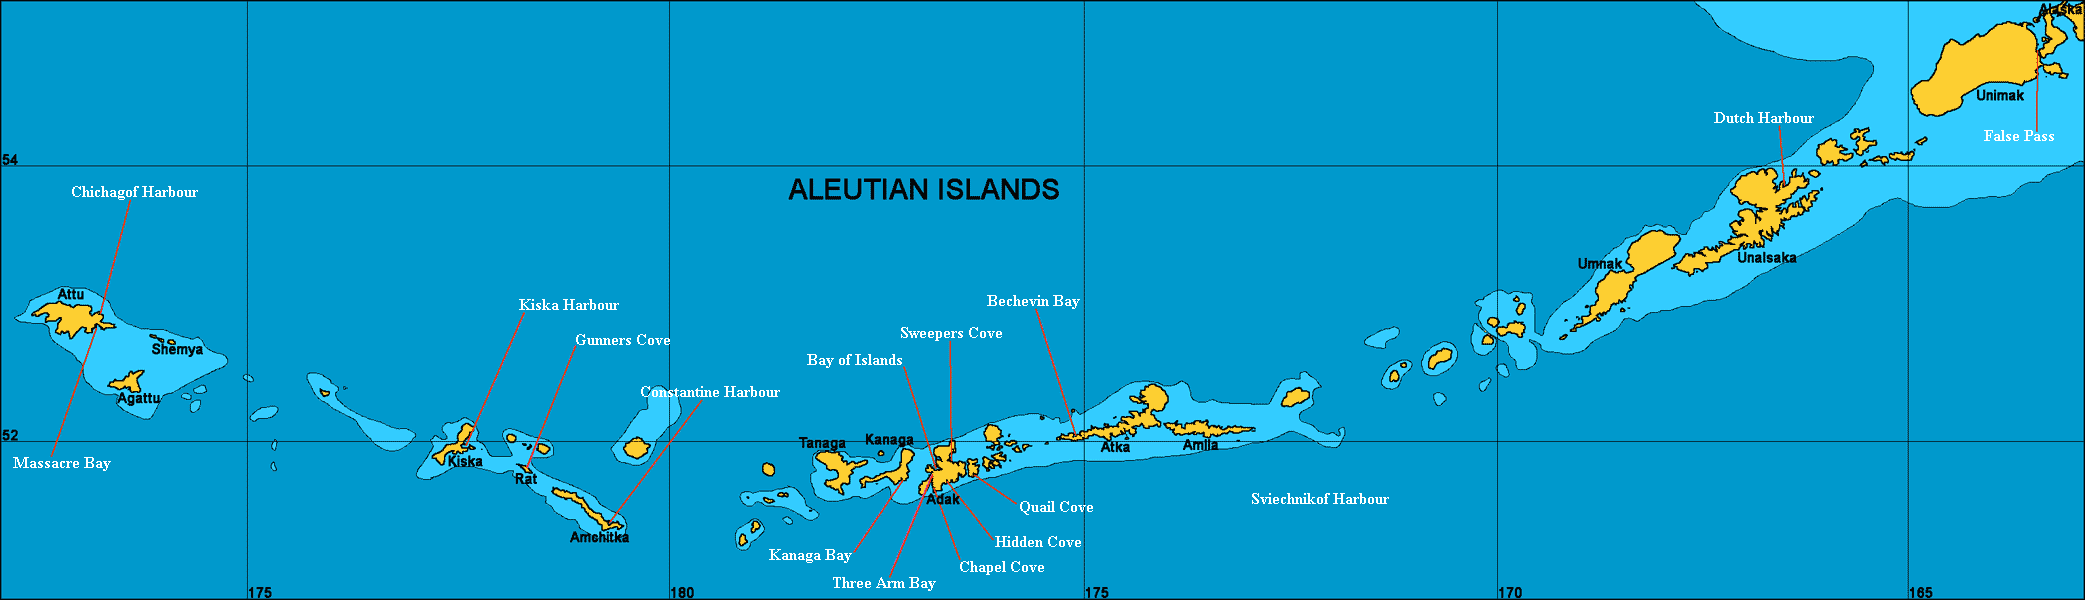 Aleutian Map.htm Txt Aleutian Chart 